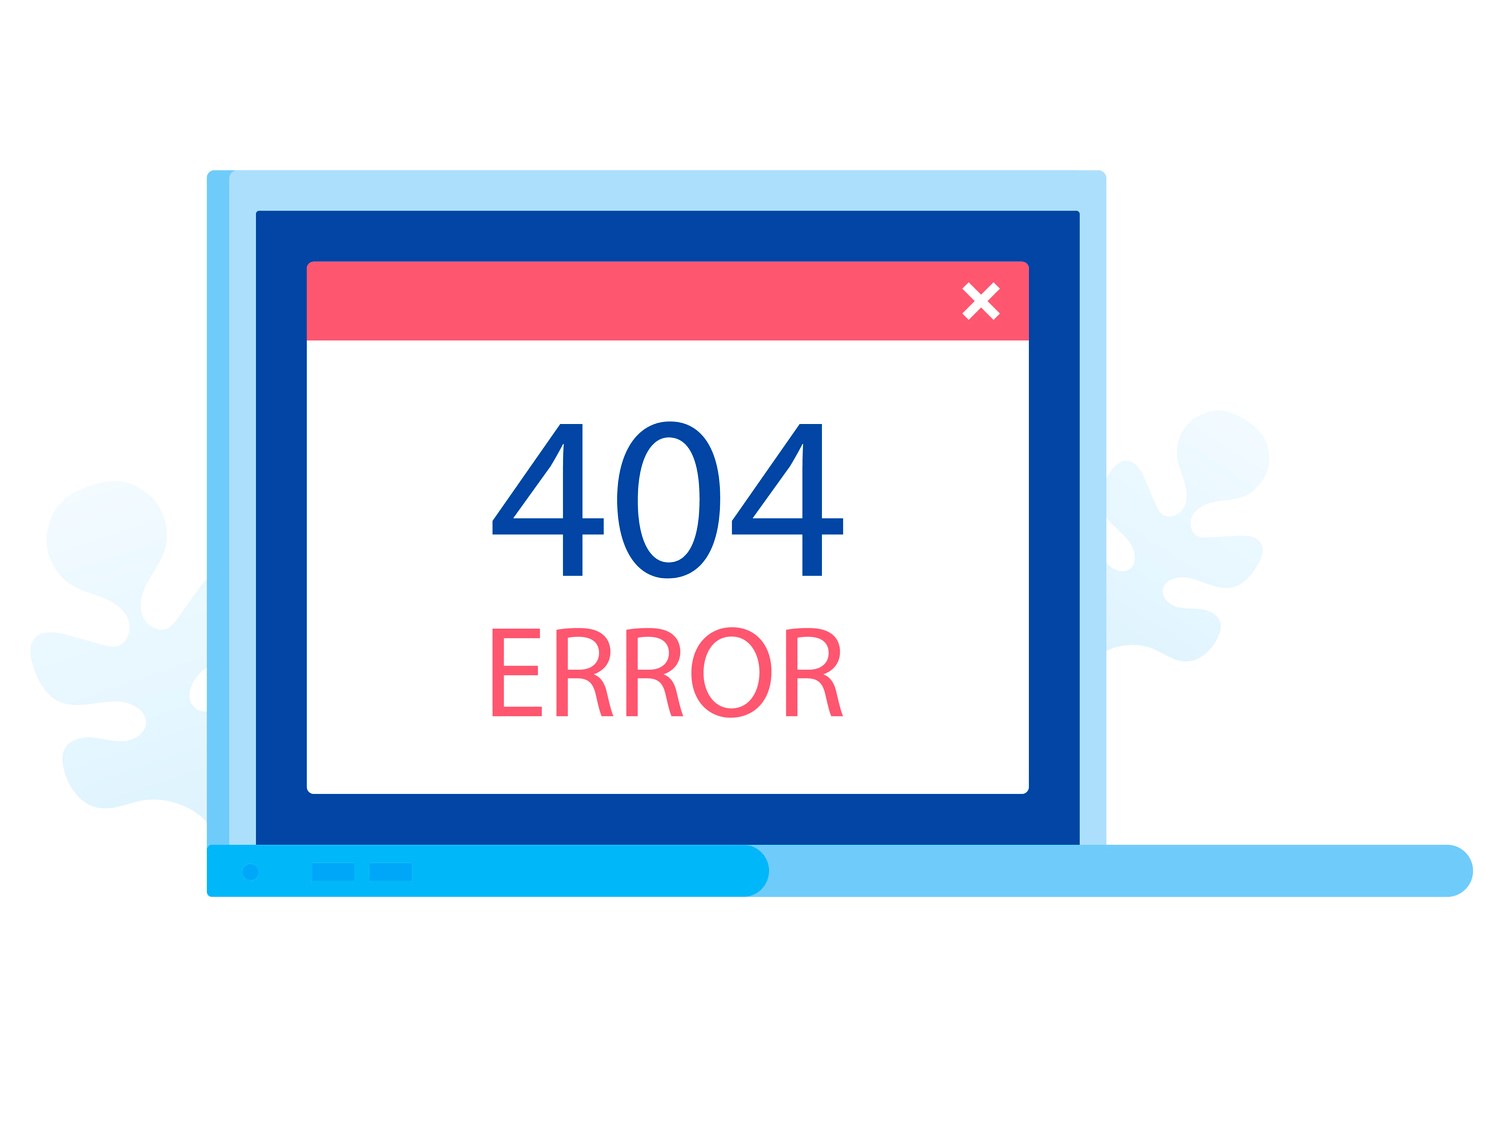 Ошибка iptv. Еррор 404. Картинка Error 404. Ко 404-4.